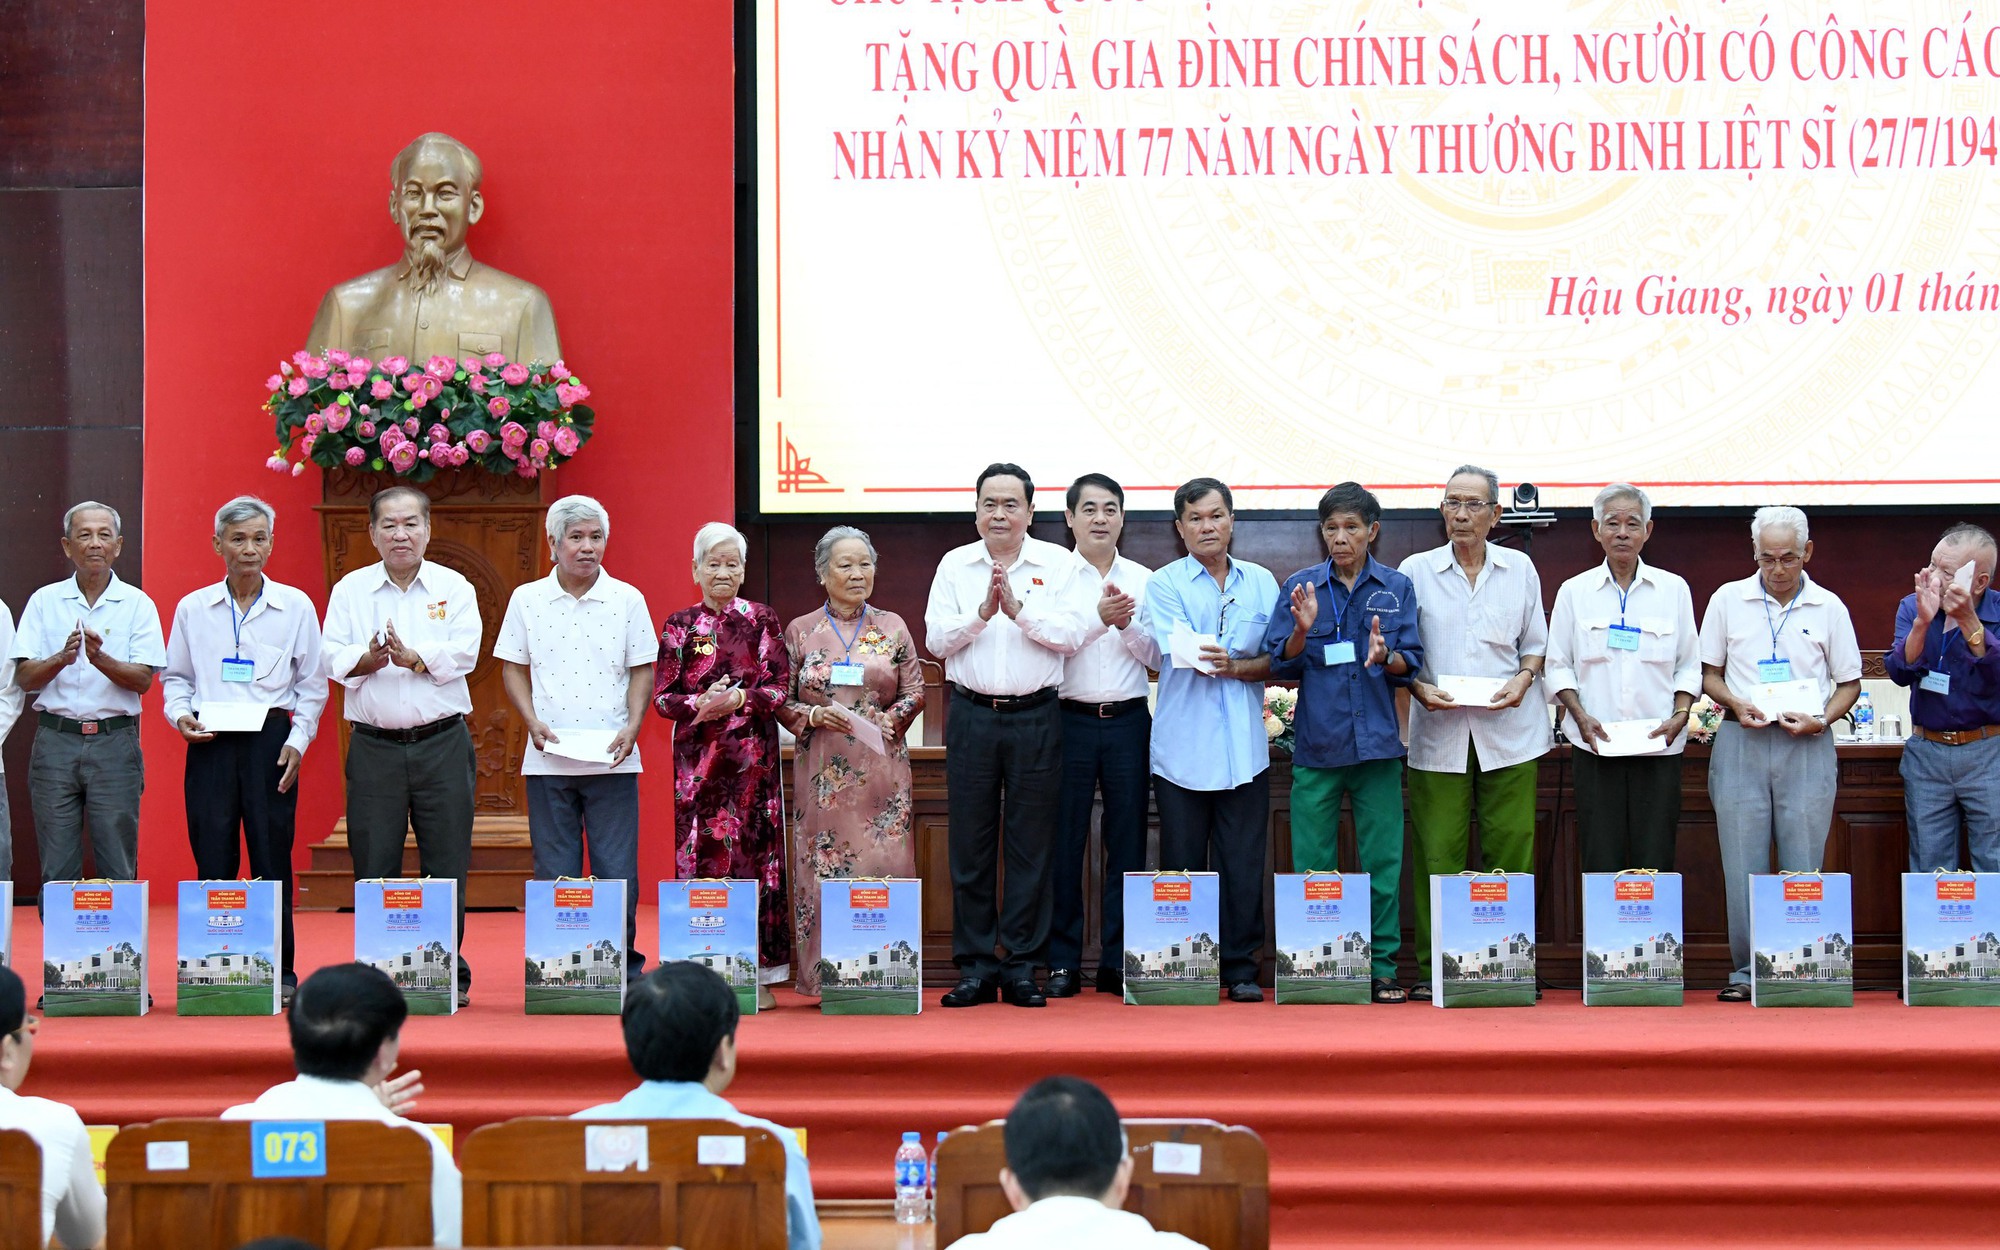 Chủ tịch Quốc hội trao tặng quà cho người có công với cách mạng tỉnh Hậu Giang